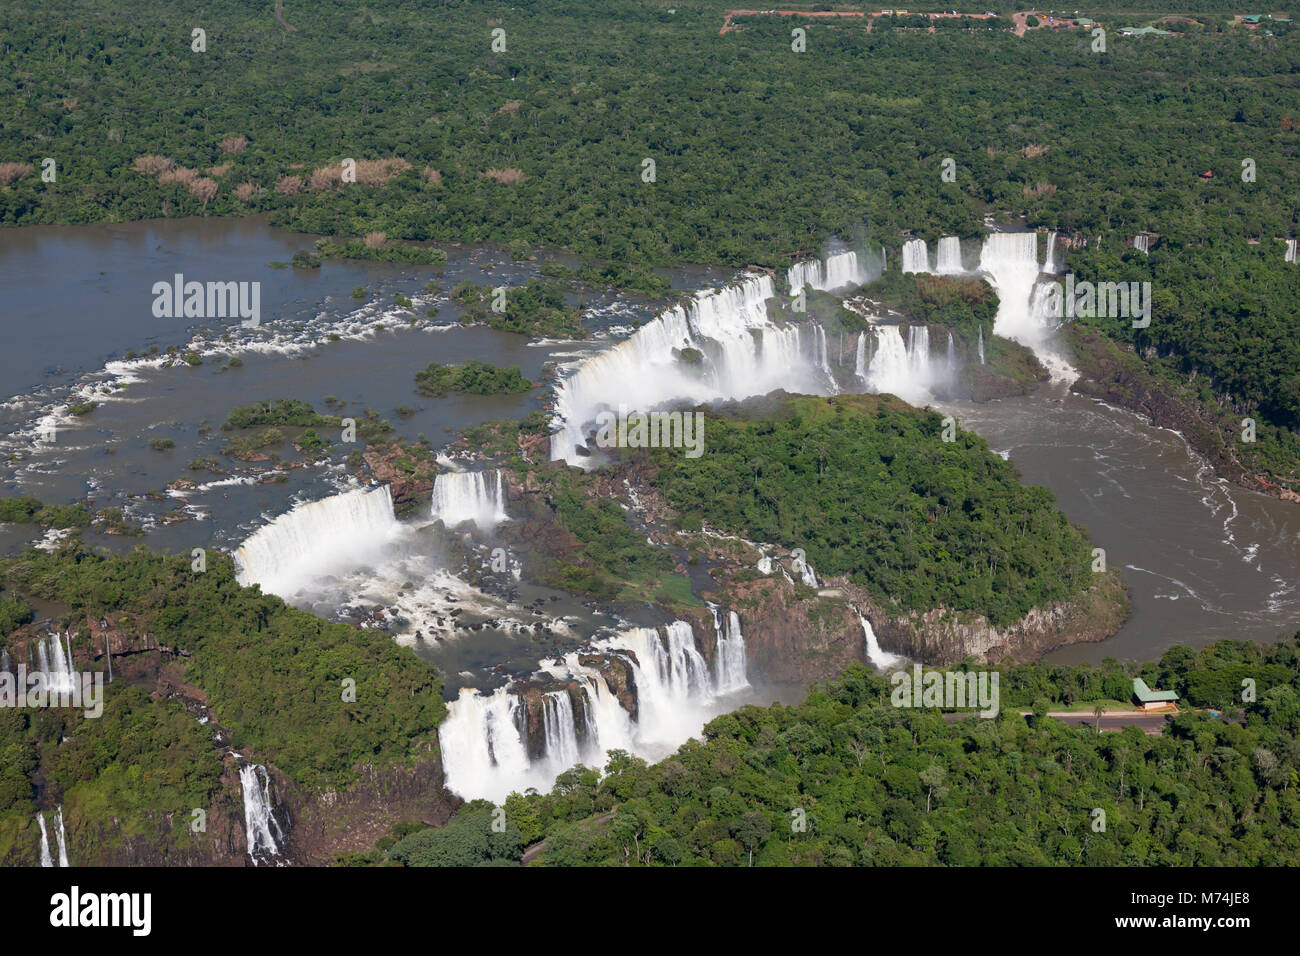 Chutes d'Iguazu à la frontière de l'eau élevé au Brésil, l'Argentine UNESCO World Heritage site, merveilles naturelles du monde paysage pittoresque panorama aérien Banque D'Images